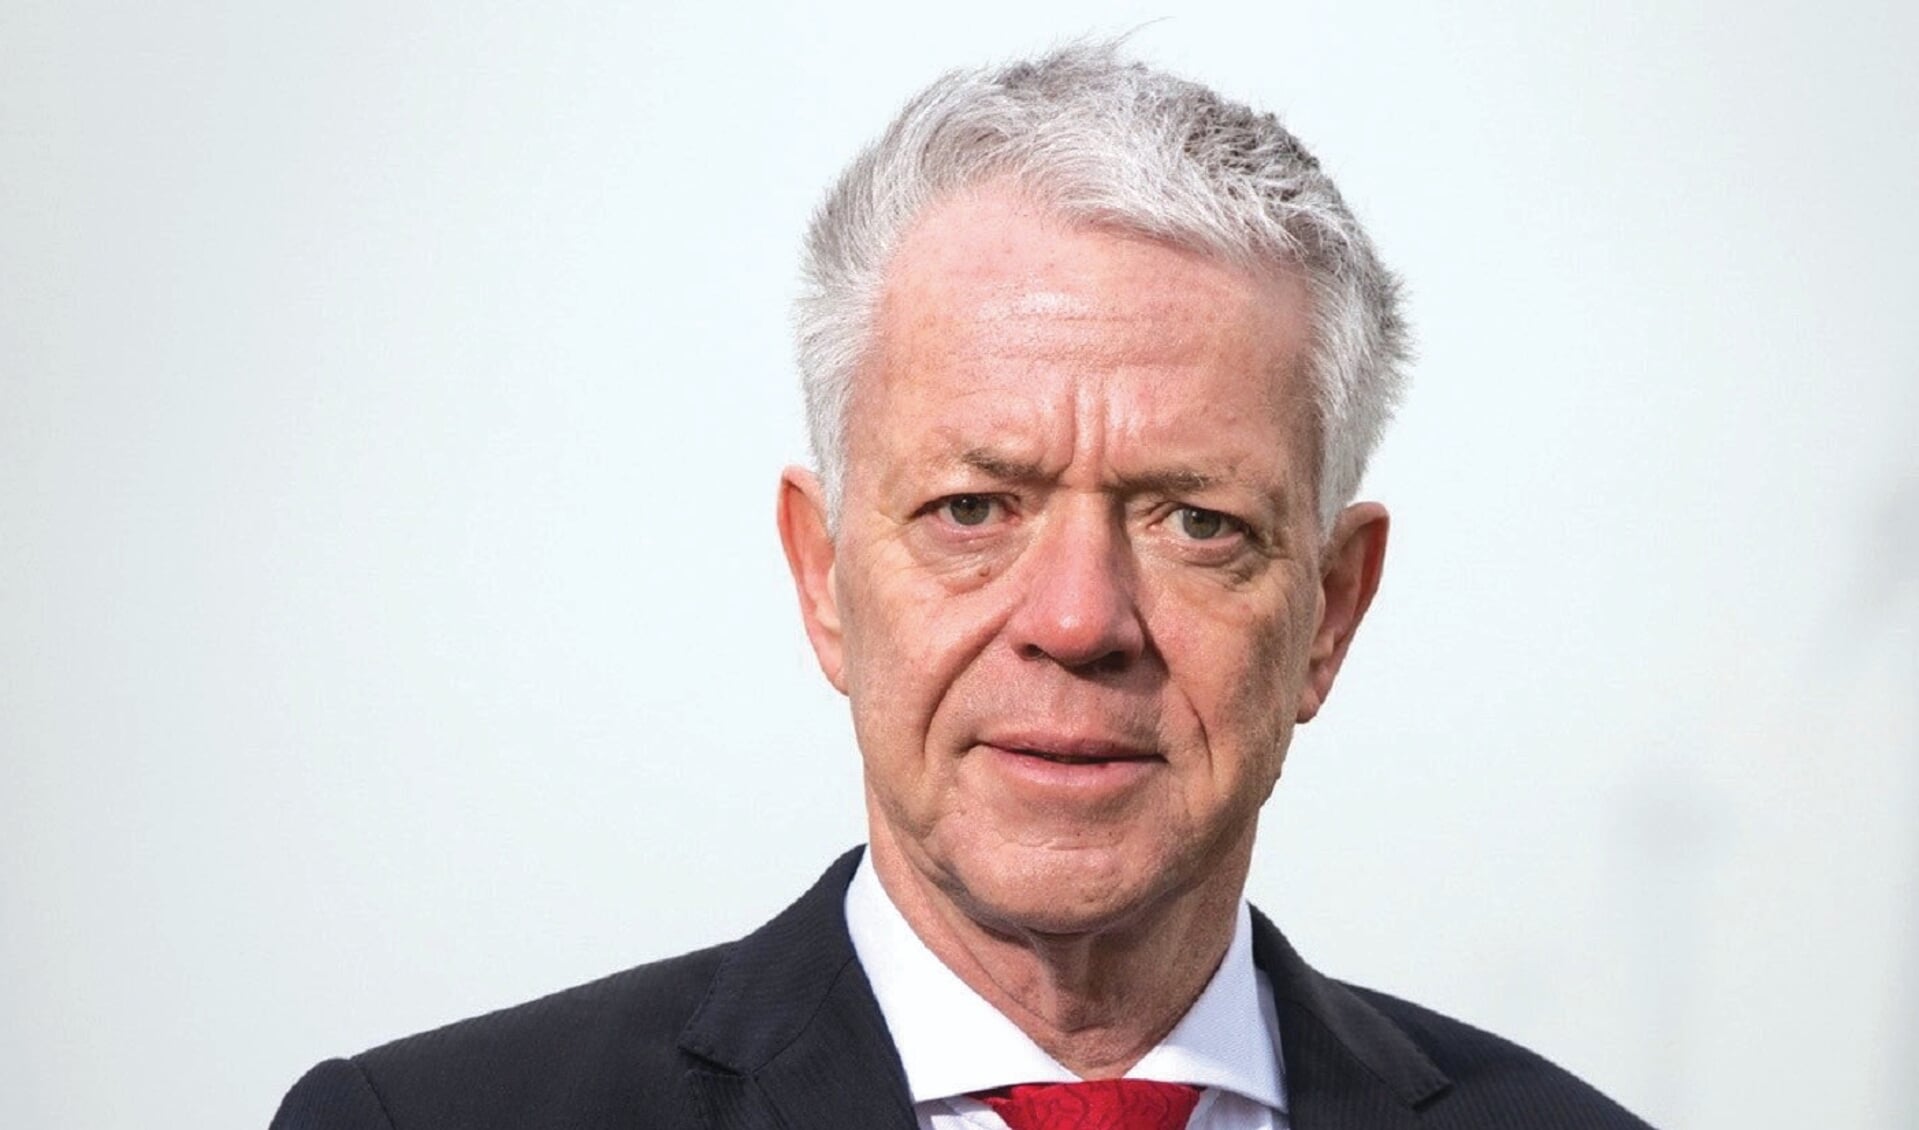 Commissaris van de Koning Leen Verbeek beslist nu wie interim-burgemeester van Almere wordt. (Foto: aangeleverd)